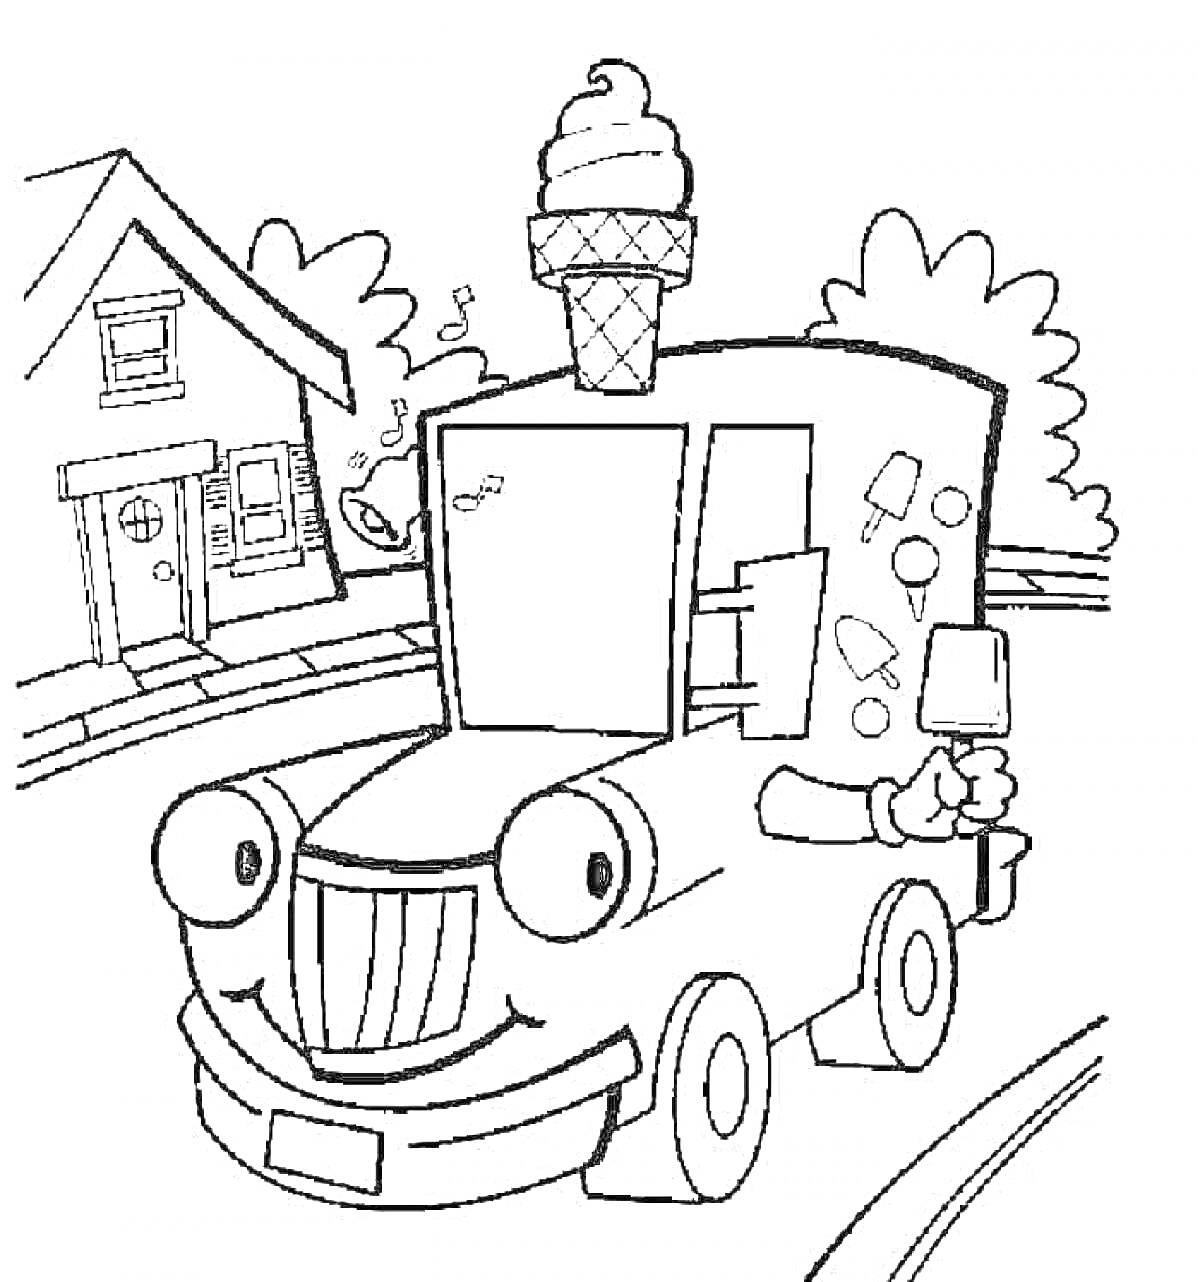 Раскраска Машинка-мороженщик на фоне дороги с домом и деревьями